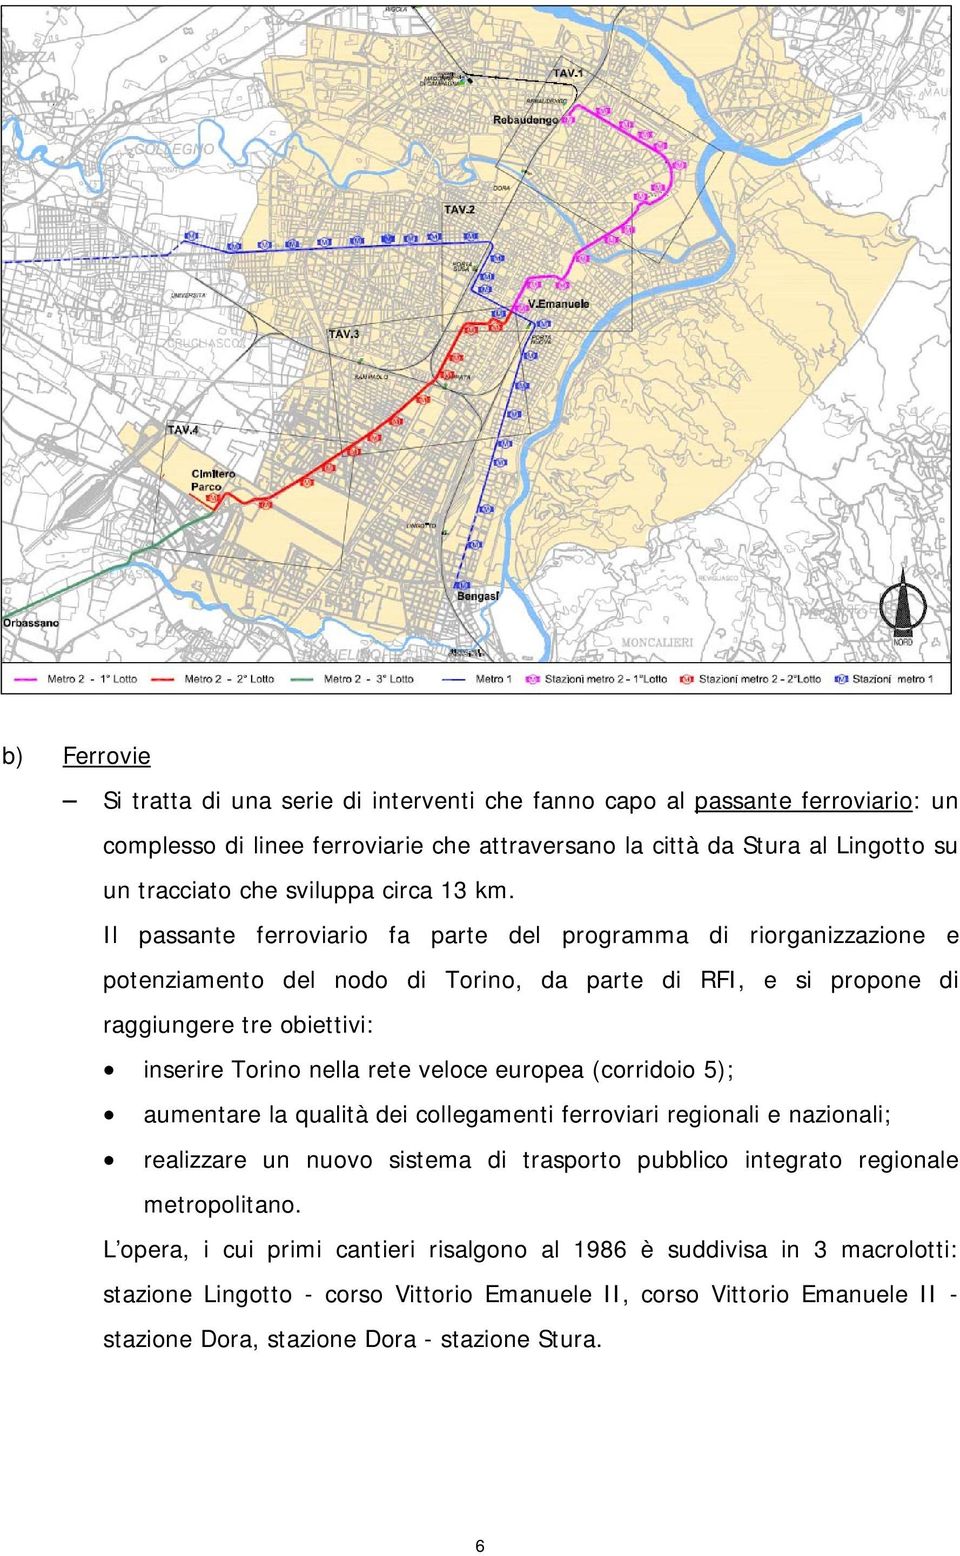 Il passante ferroviario fa parte del programma di riorganizzazione e potenziamento del nodo di Torino, da parte di RFI, e si propone di raggiungere tre obiettivi: inserire Torino nella rete veloce